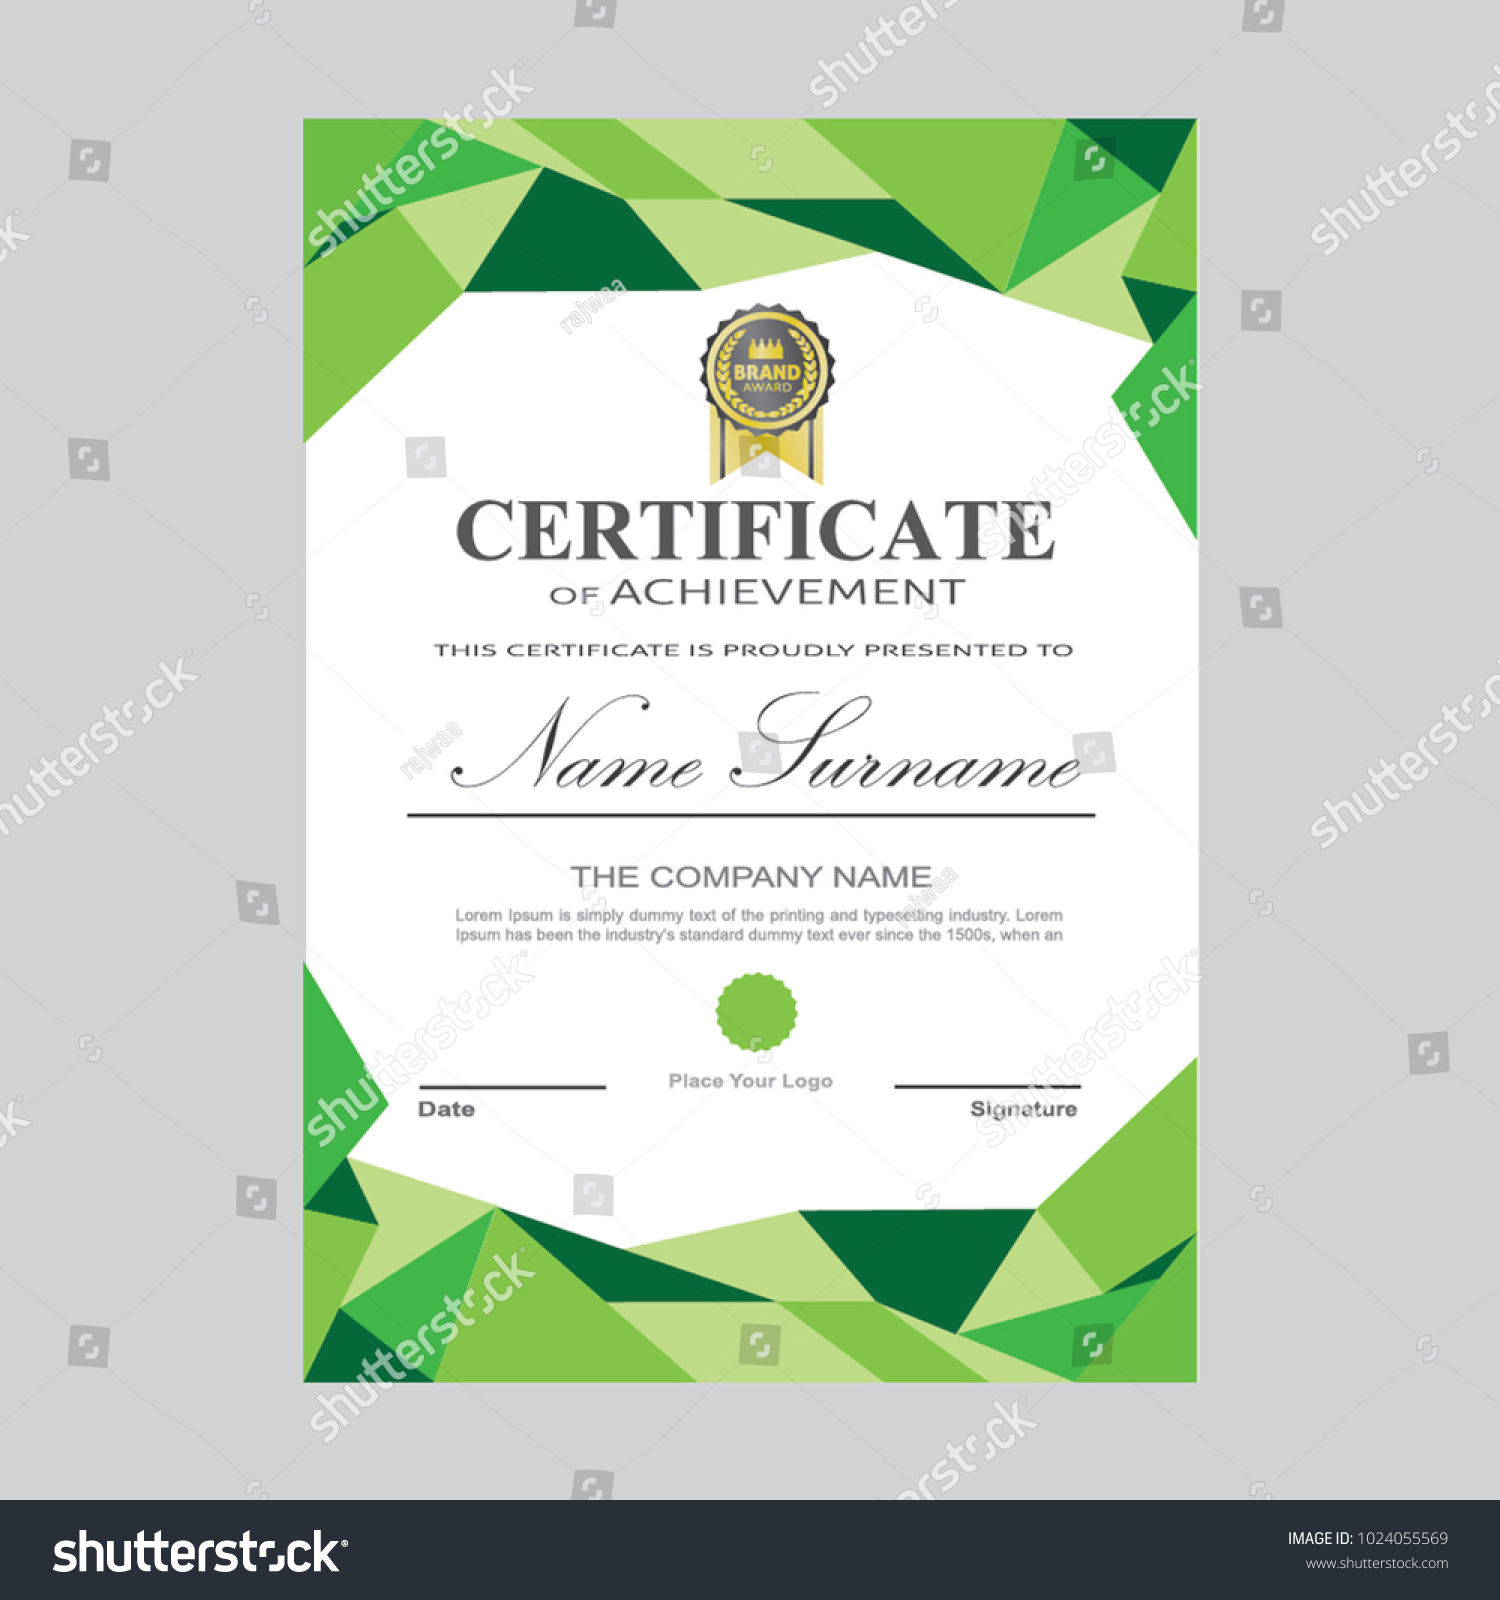 Certificate Template Modern A4 Horizontal Landscape Stock Within Landscape Certificate Templates